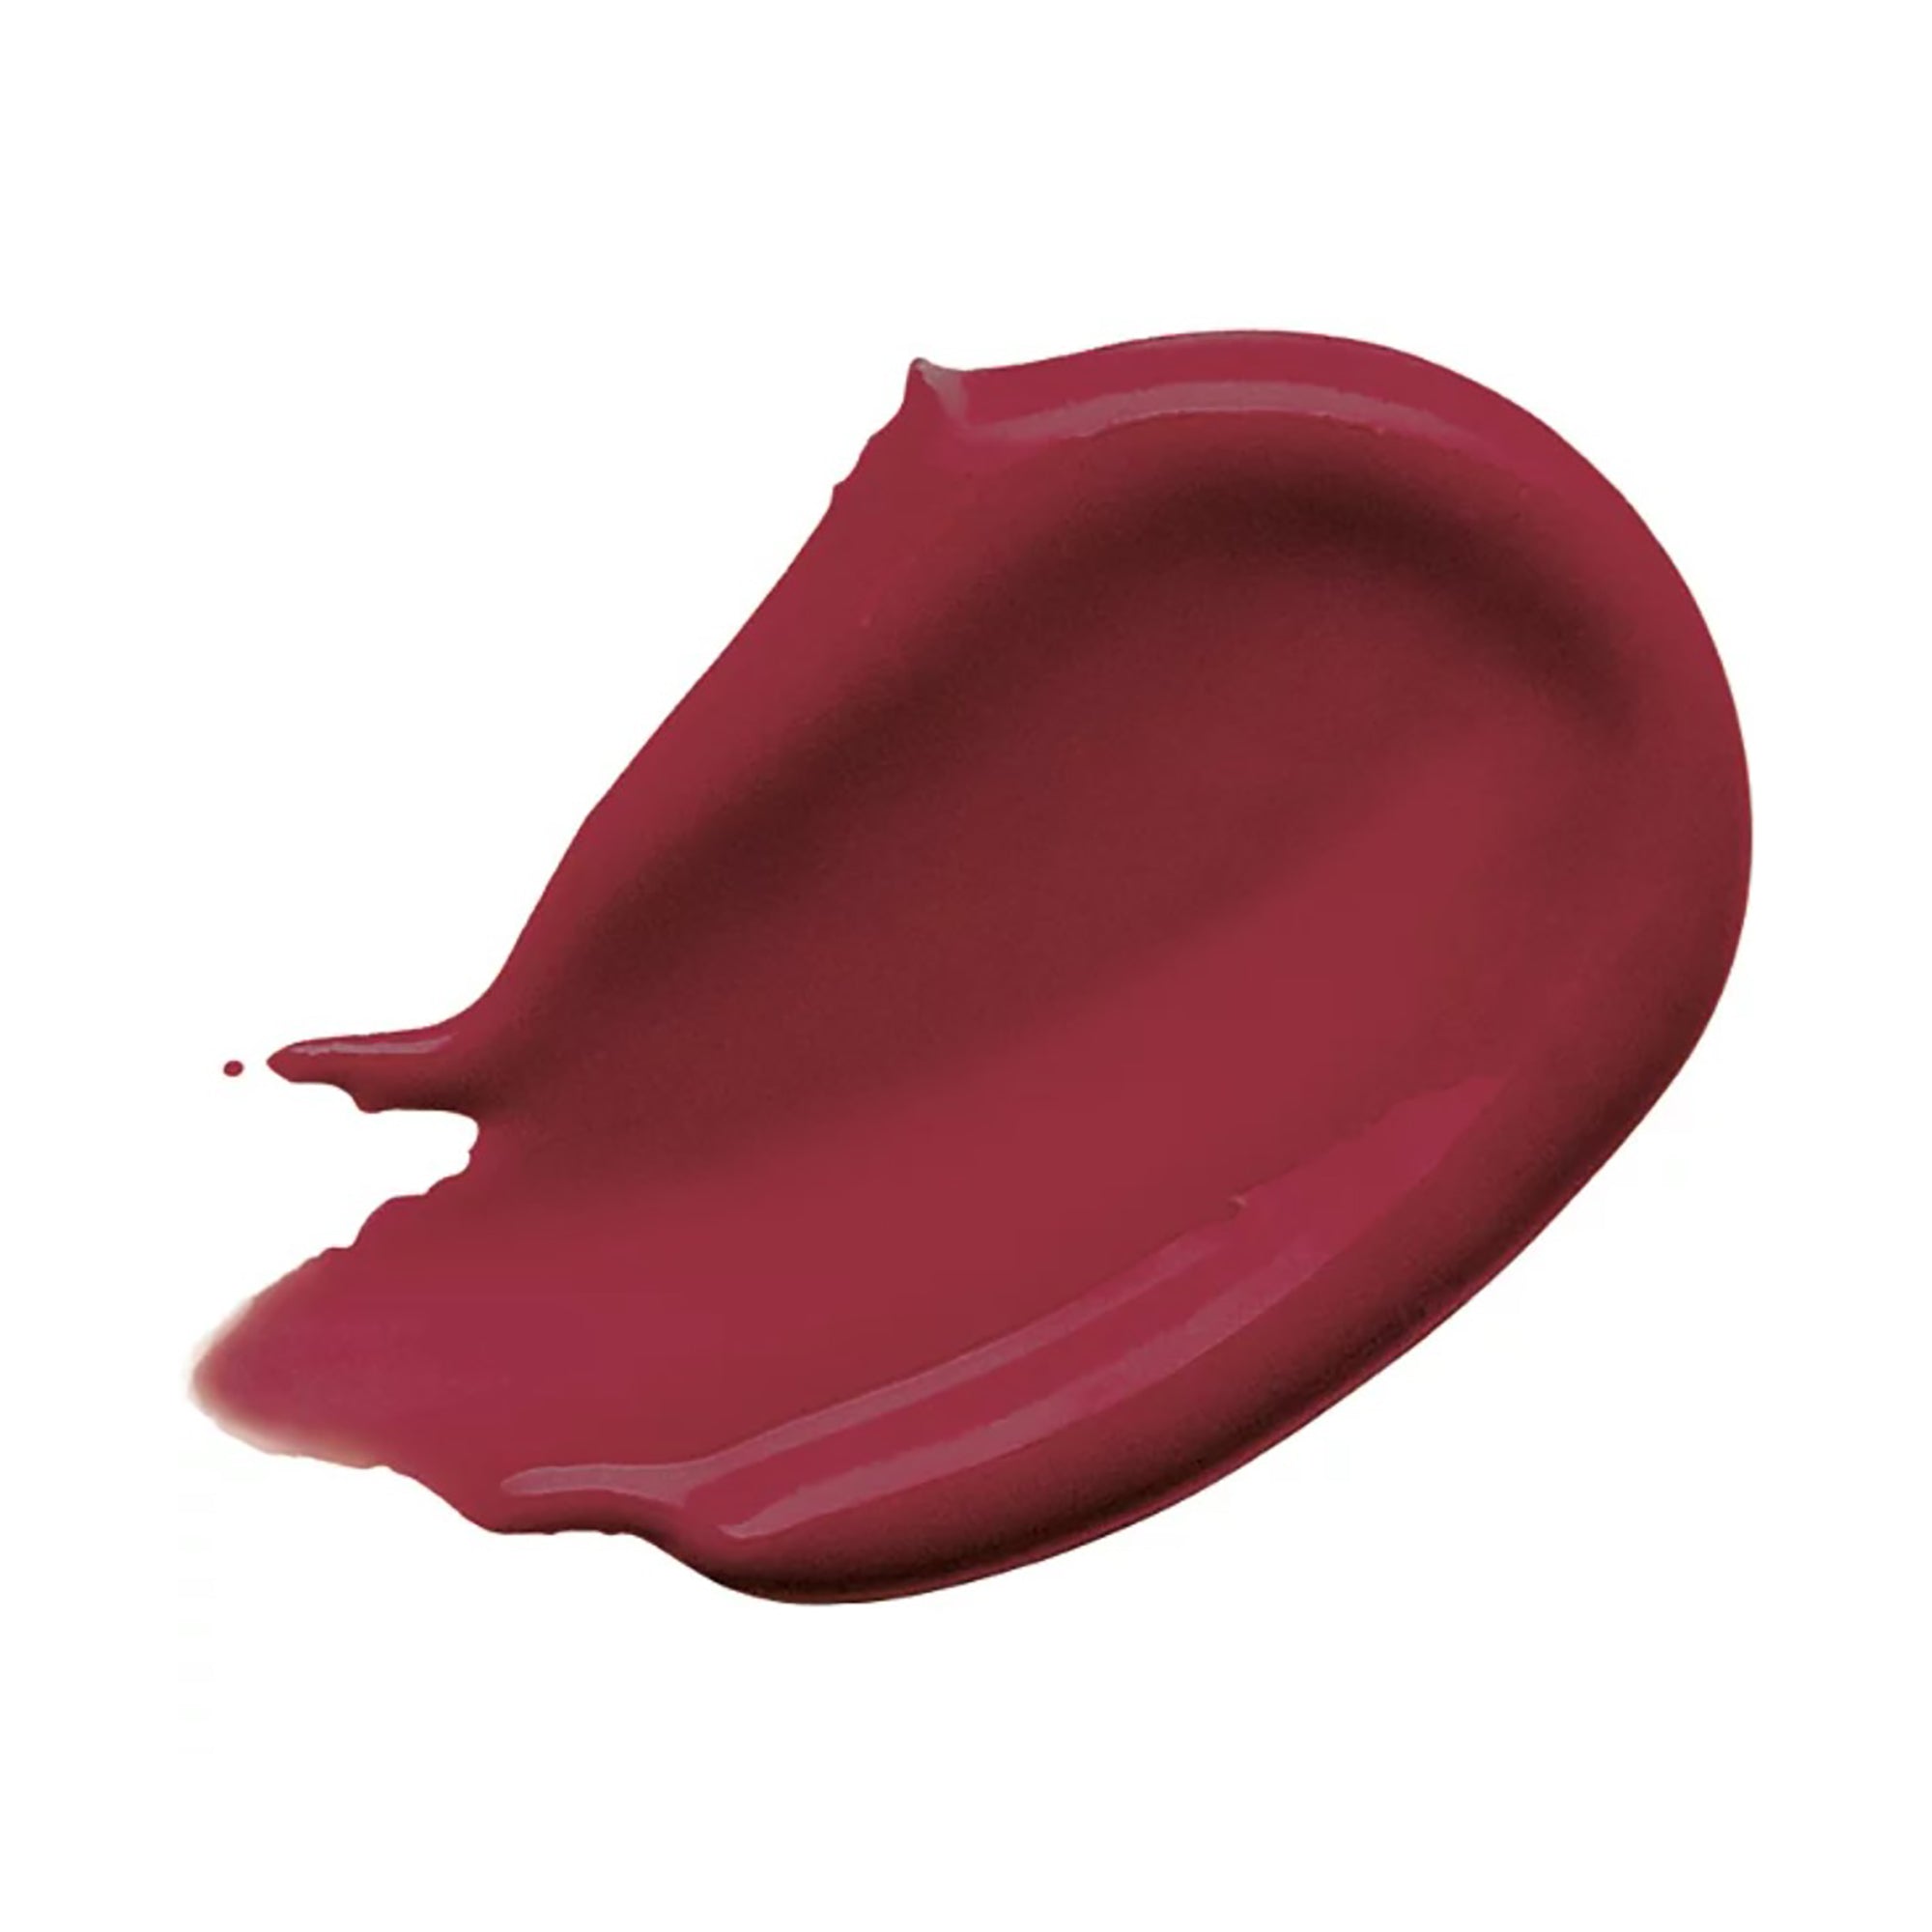 Buxom Full-on Plumping Lip Cream Gloss / KIR ROYALE